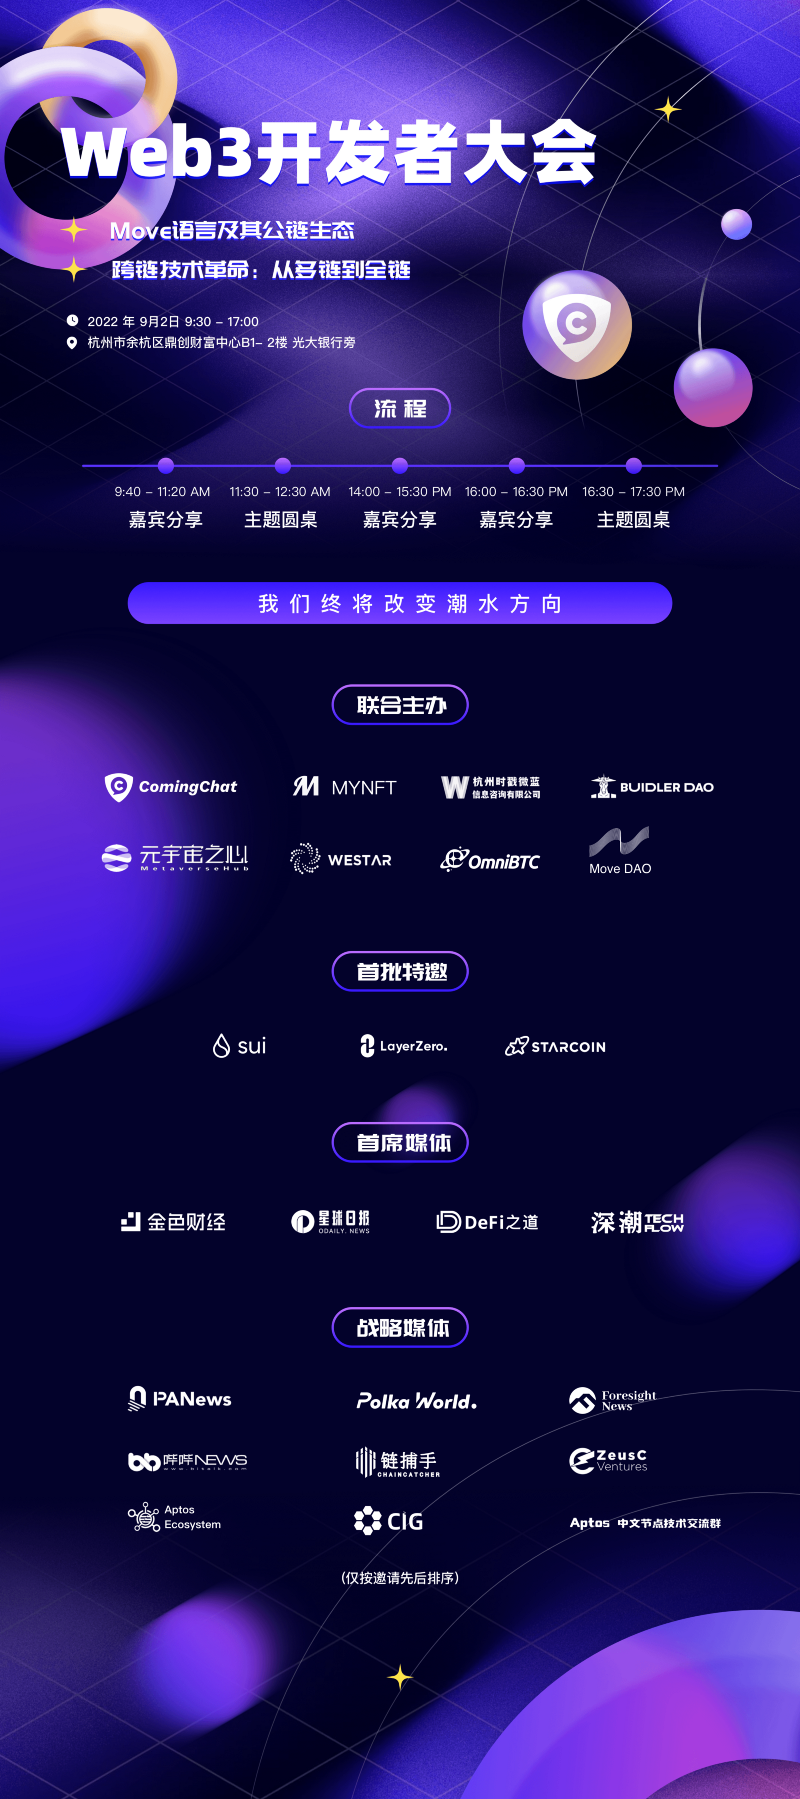 顺势而为，扶摇直上，杭州Web3开发者大会来了！